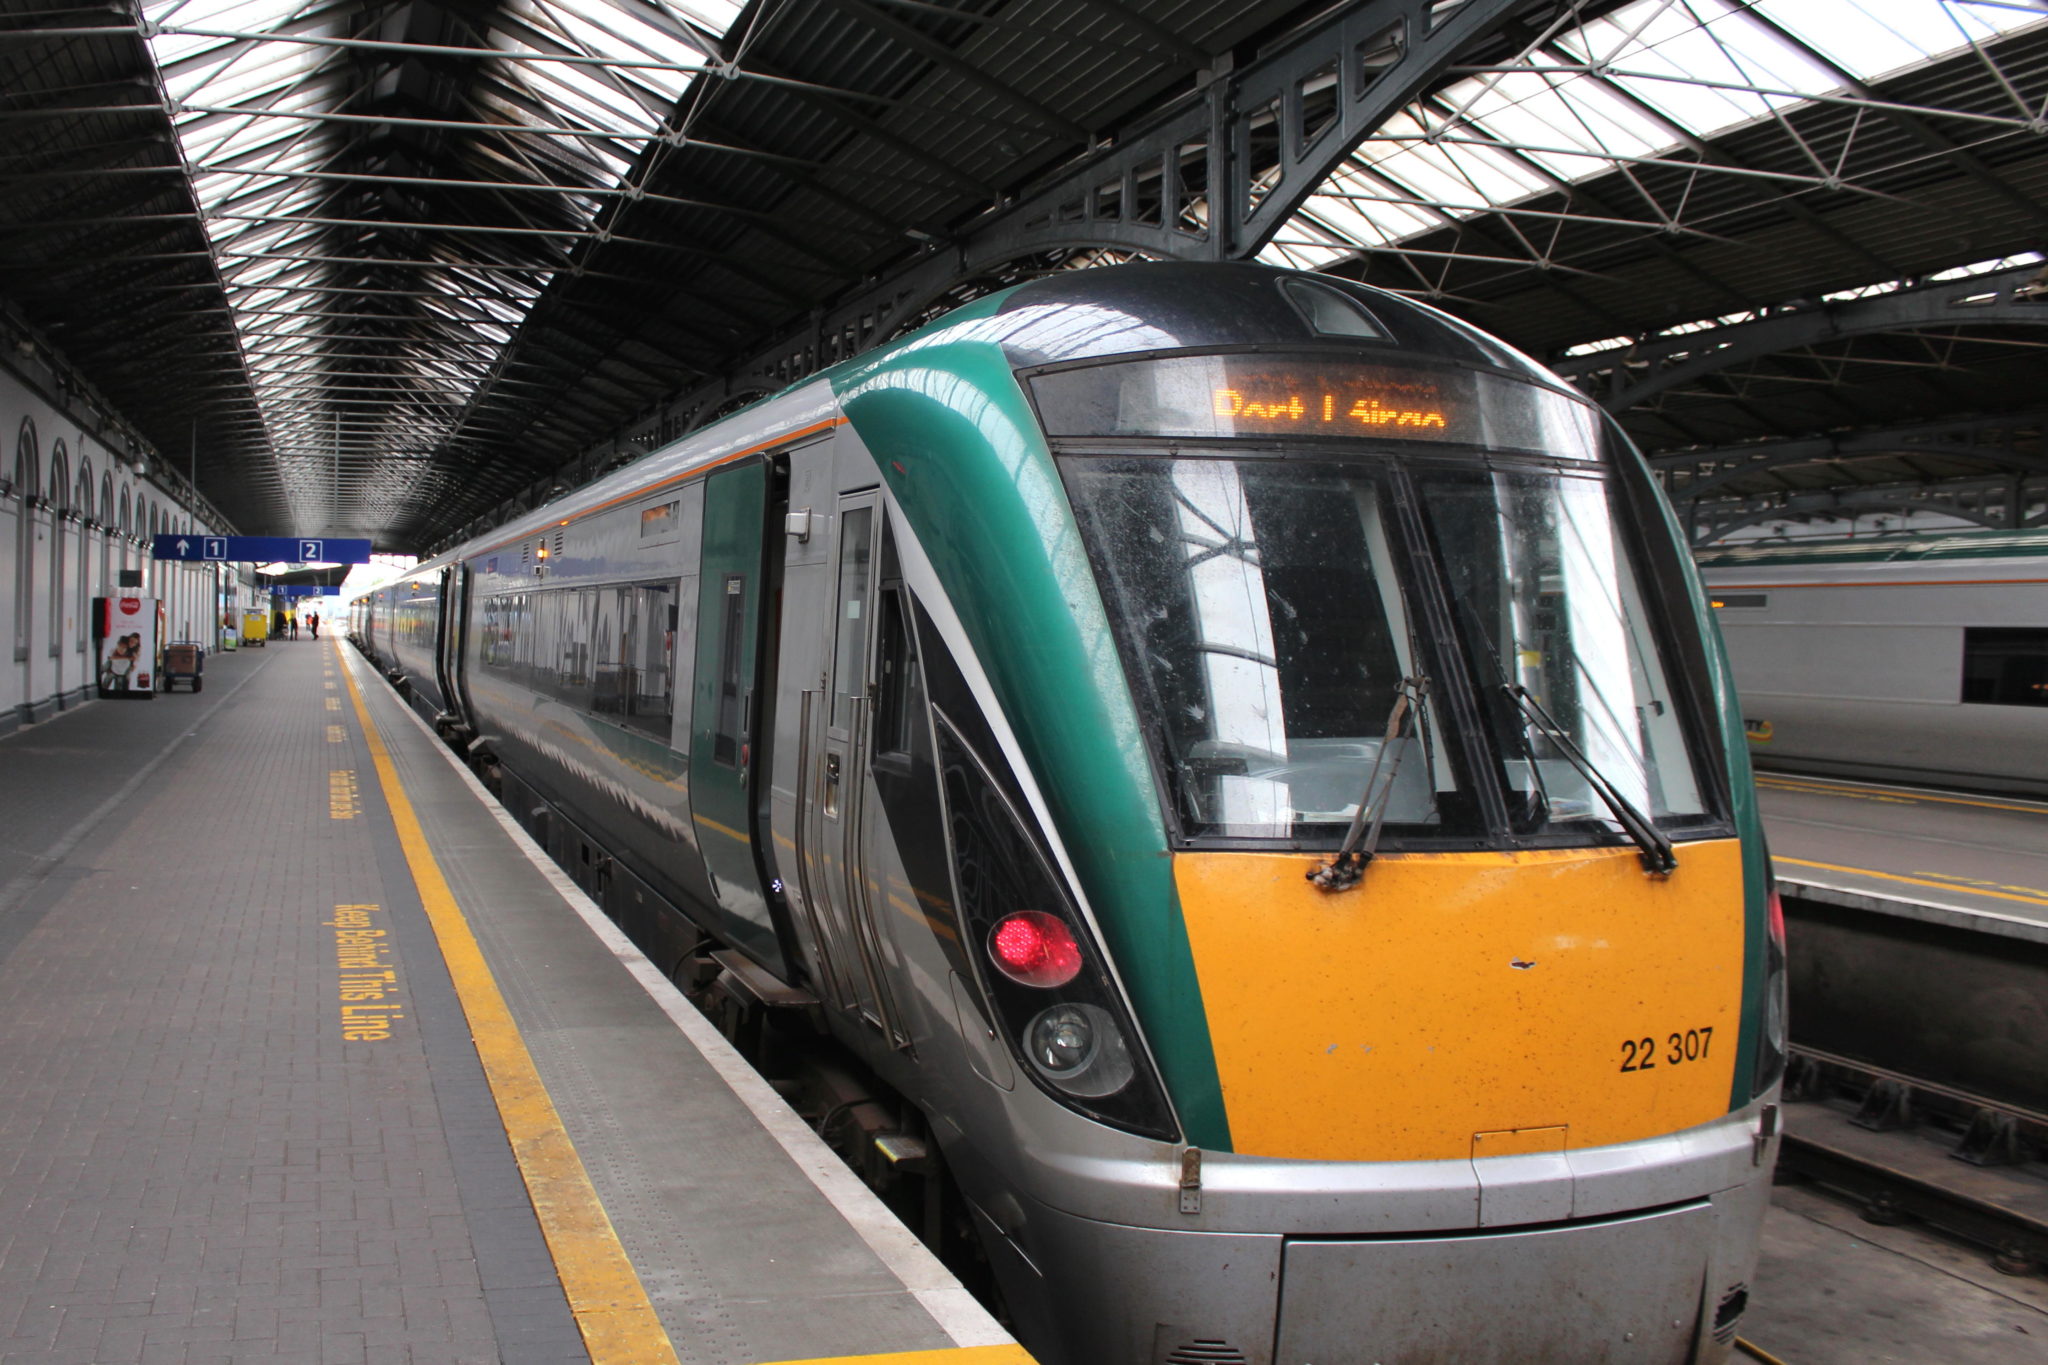 An Irish Rail train at Heuston Station, Dublin in June 2014.